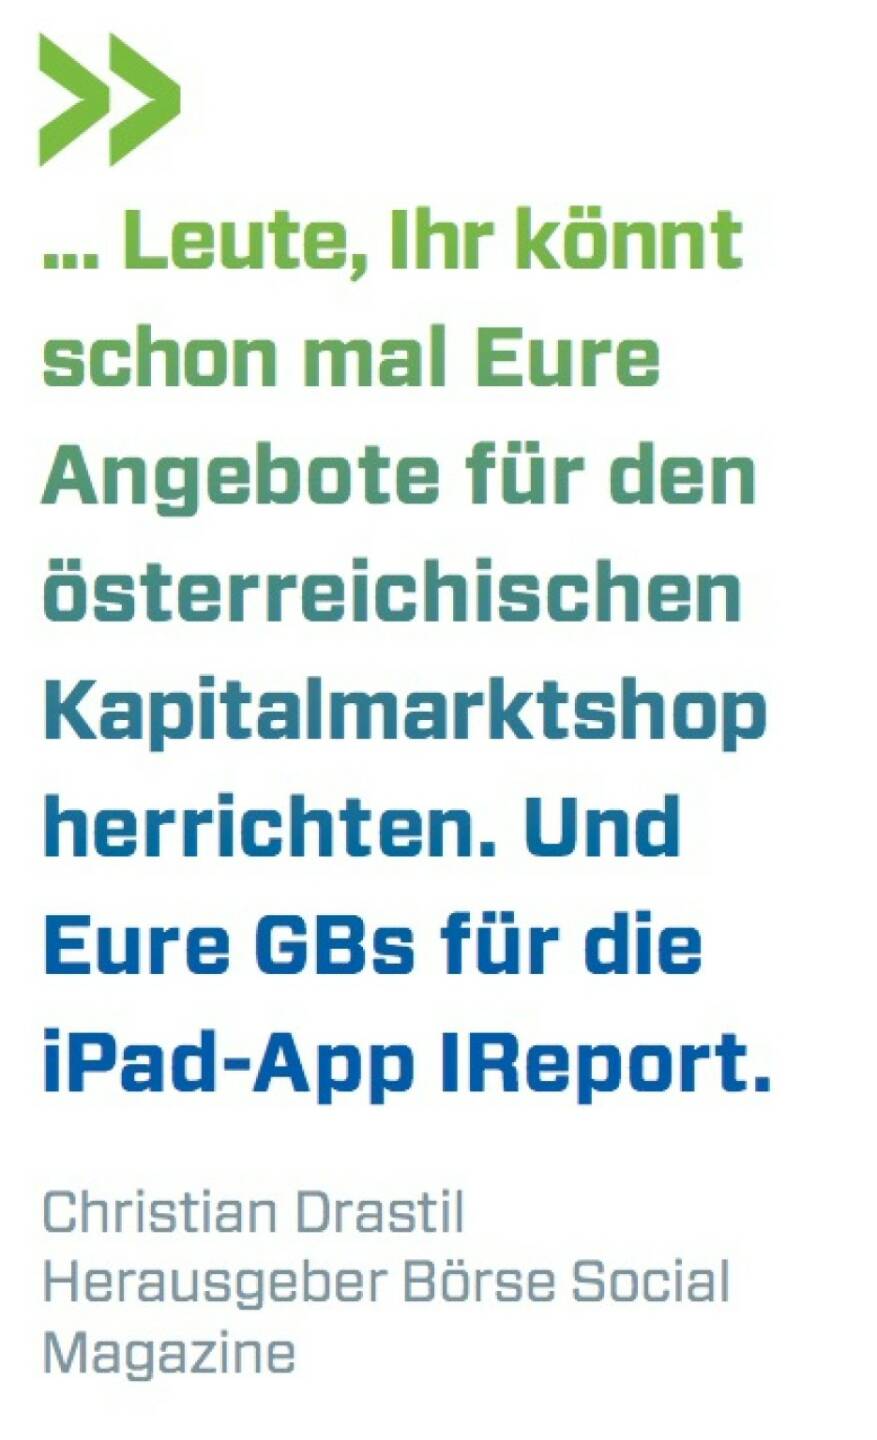 ... Leute, Ihr könnt schon mal Eure Angebote für den österreichischen Kapitalmarktshop herrichten. Und Eure GBs für die iPad-App IReport. Christian Drastil (BSN)